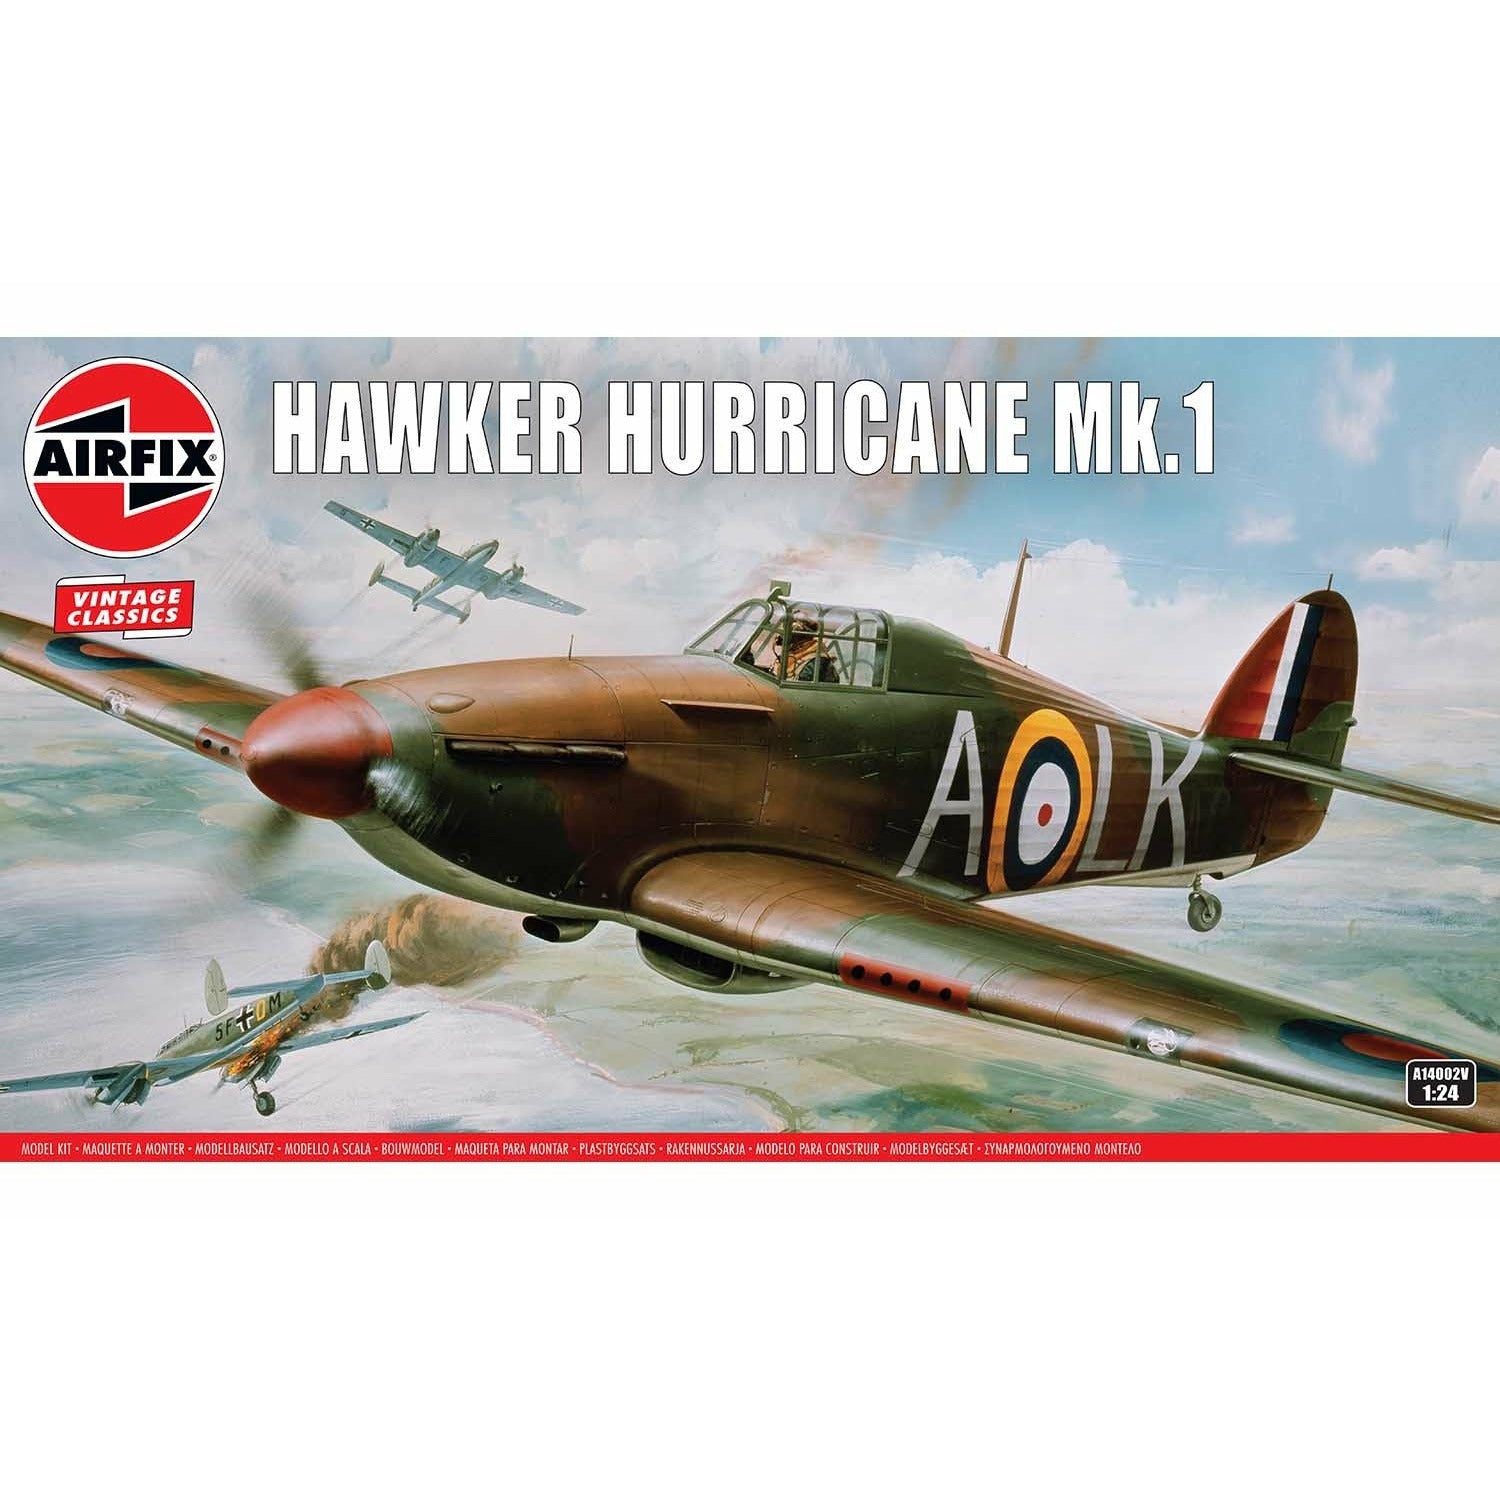 Hawker Hurrican Mk. 1 1/24 #14002 by Airfix